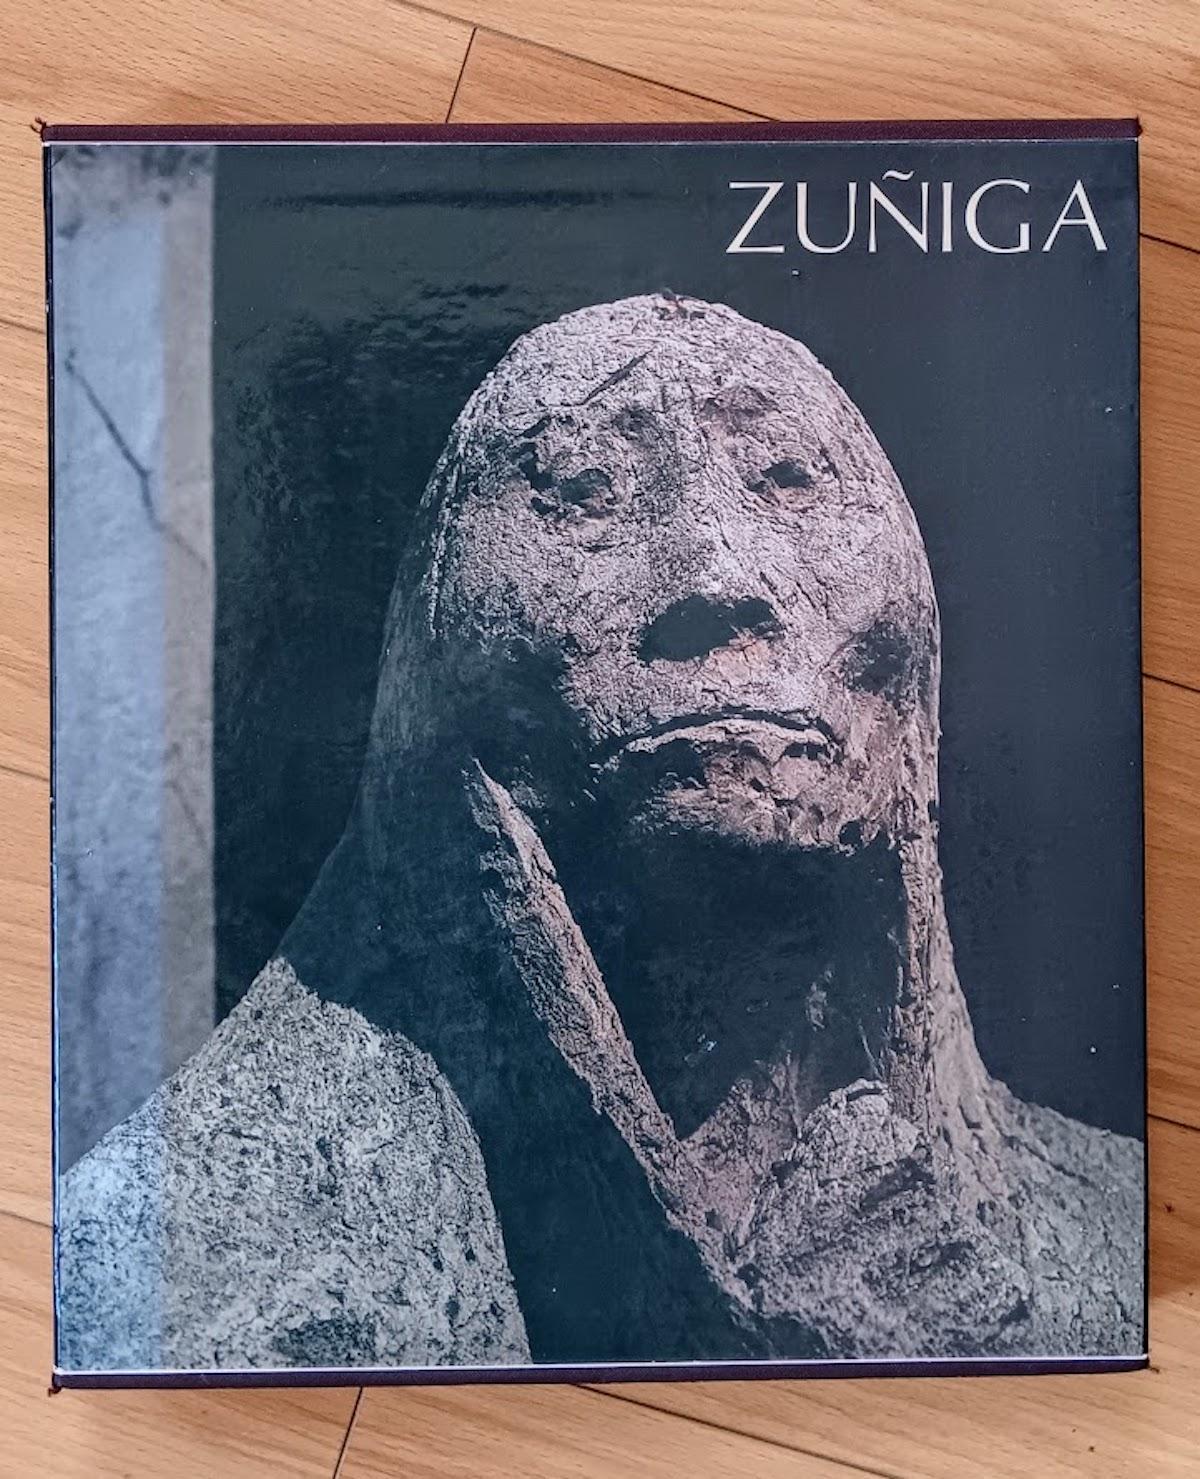 Francisco Zuñiga Künstler Monographie - 1. Misrachi Art Gallery Edition